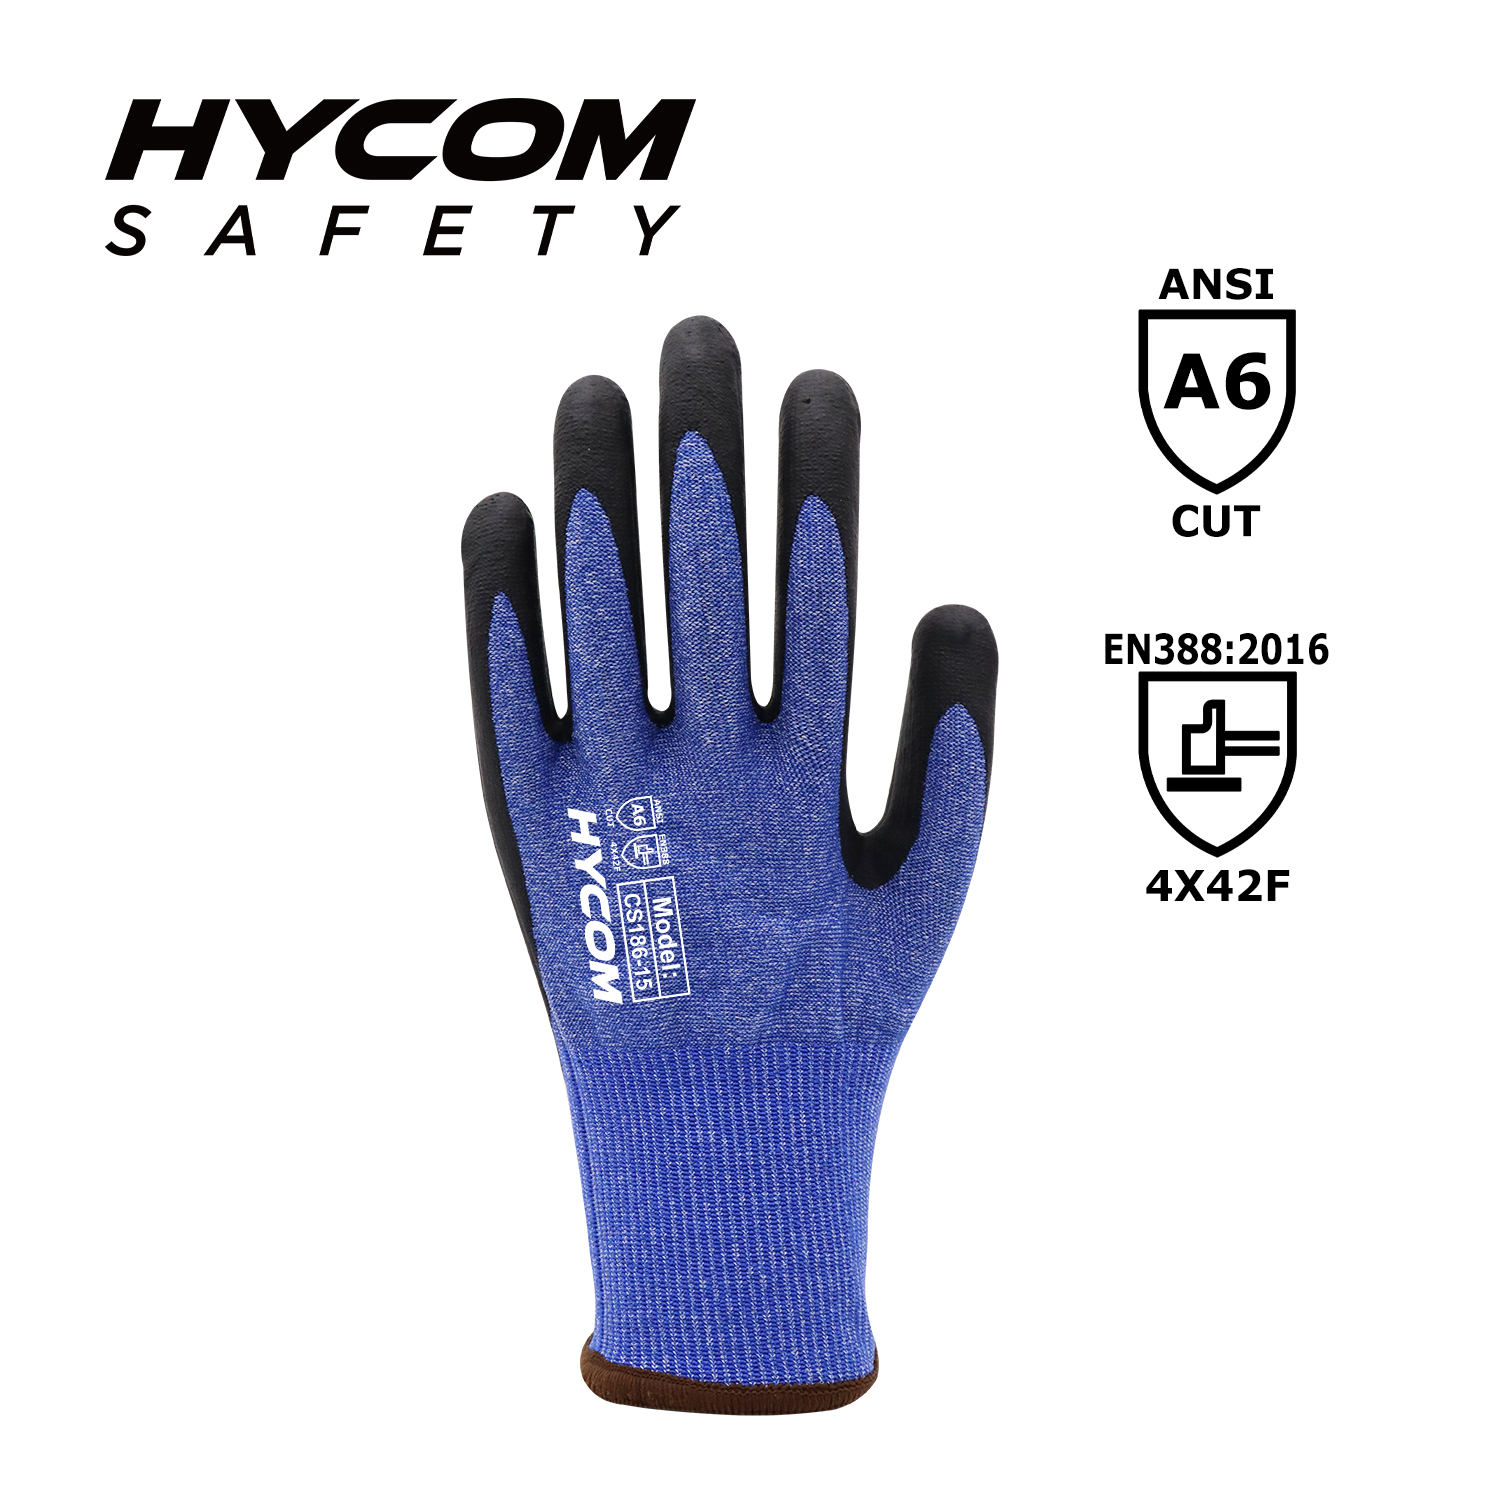 HYCOM 18G ANSI 6 Schnittfester Handschuh mit Schaumstoff-Nitril-Beschichtung, wasserabweisender HPPE-Handschuh 